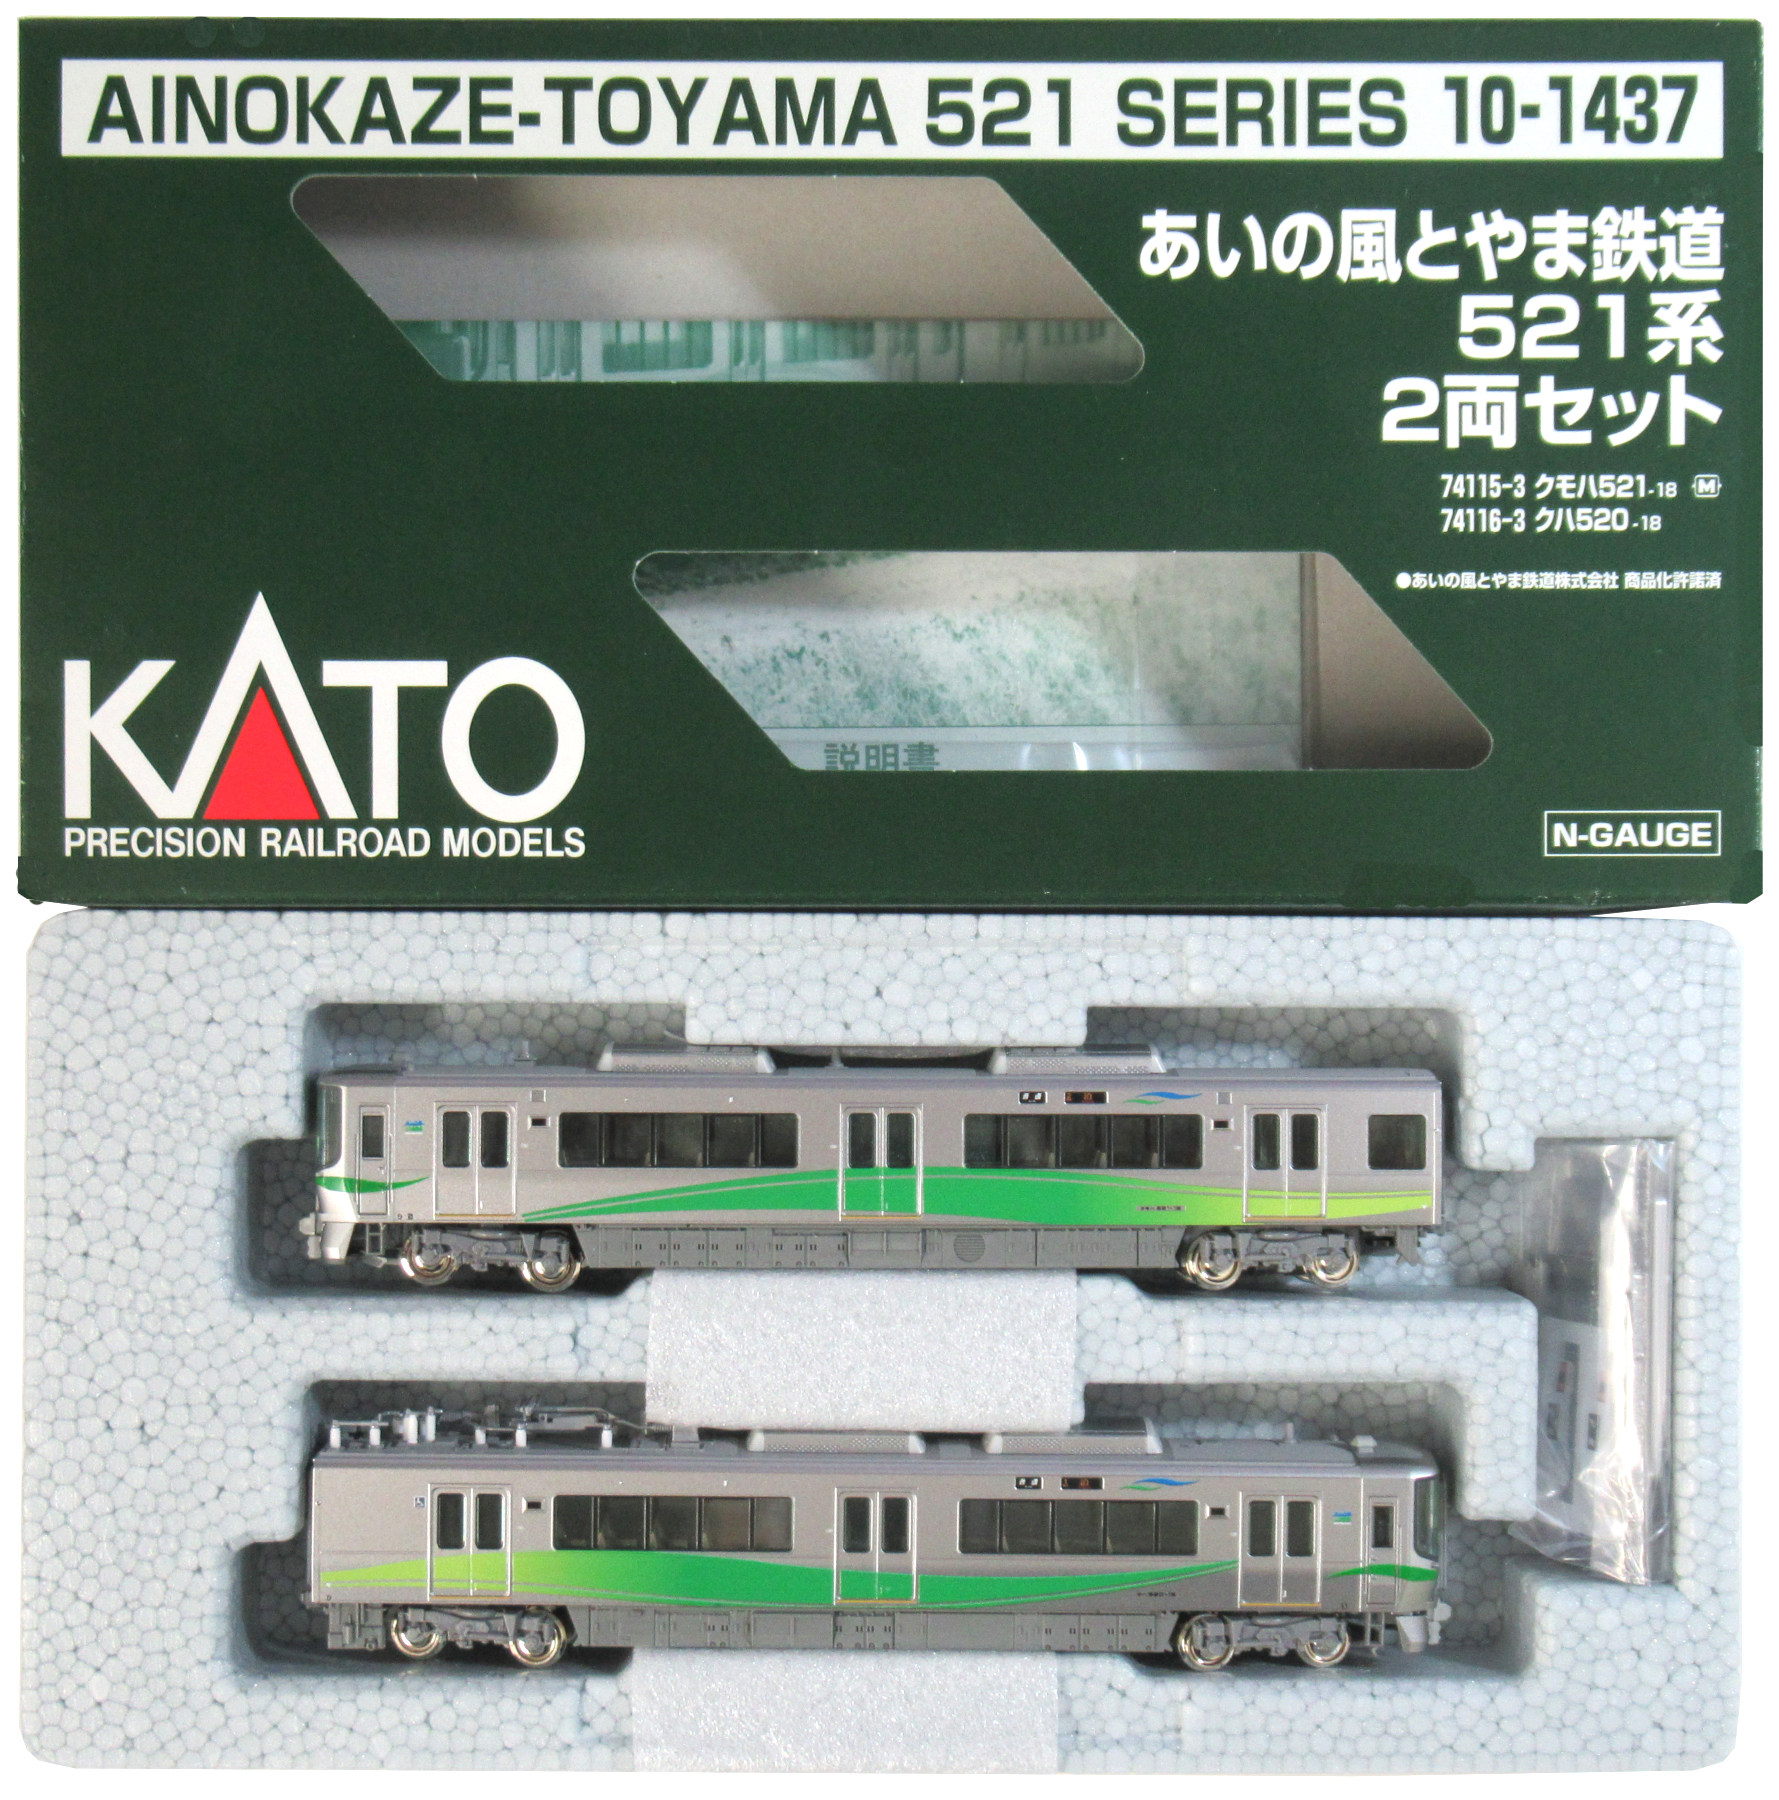 ブランド雑貨総合 KATO あいの風とやま鉄道 521系2両セット 10-1437 